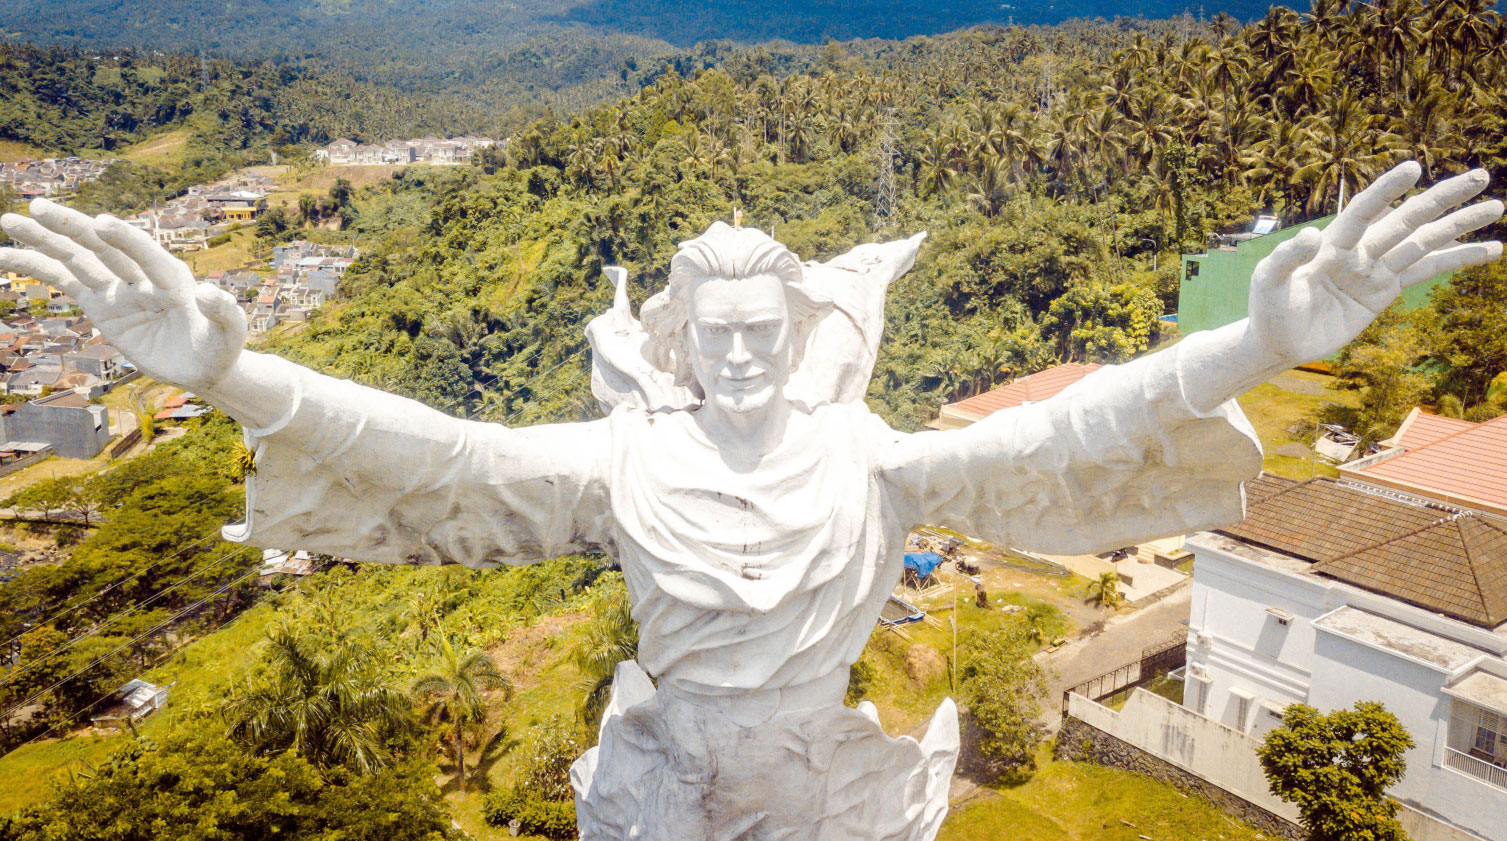 Statue of Jesus in Manado